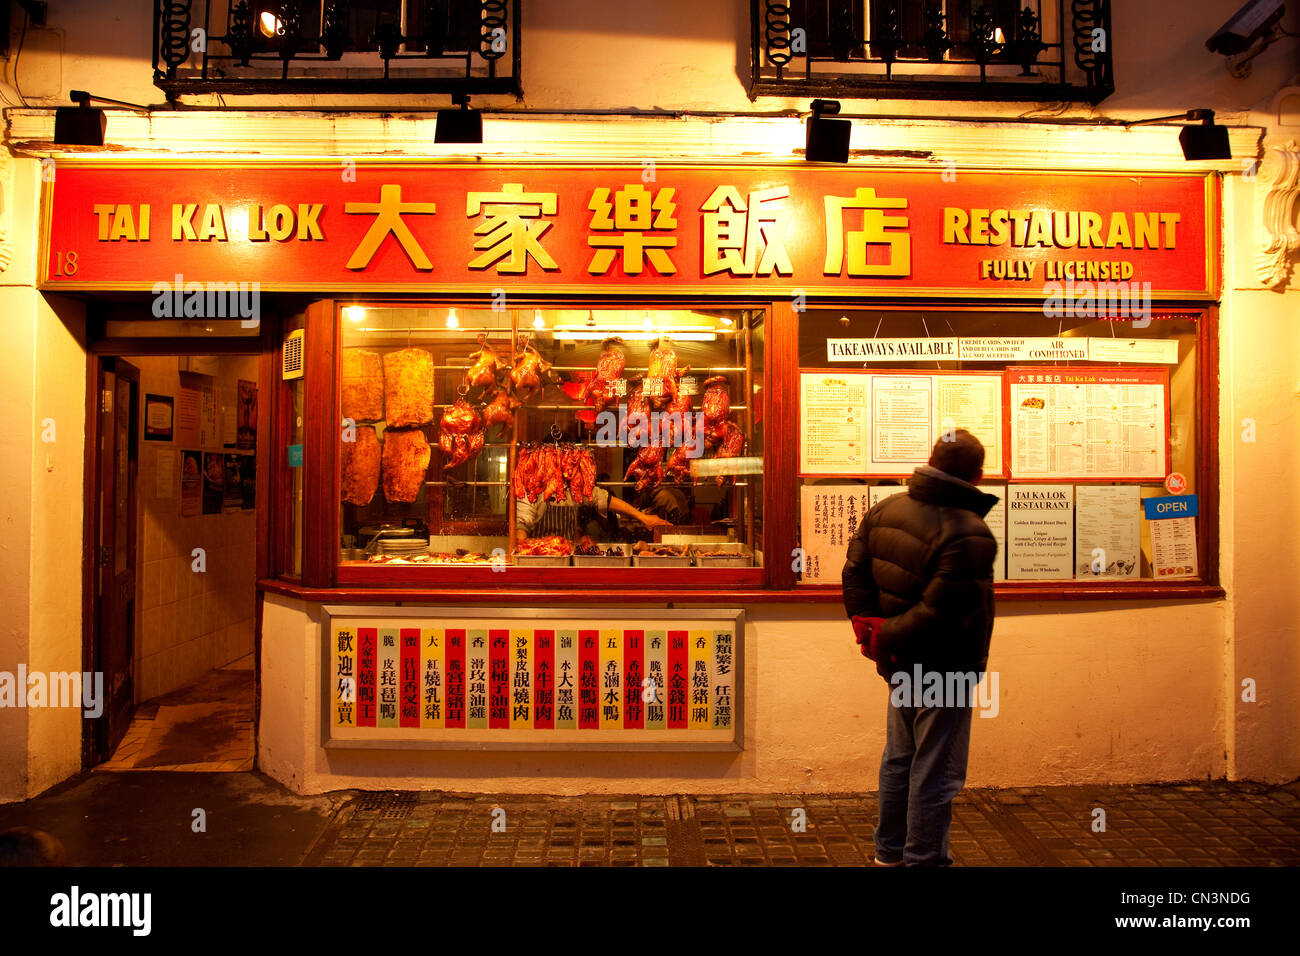 Royaume-uni, Londres, Soho, Chinatown, Gerrard Street, allumé en façade d'un restaurant chinois Banque D'Images